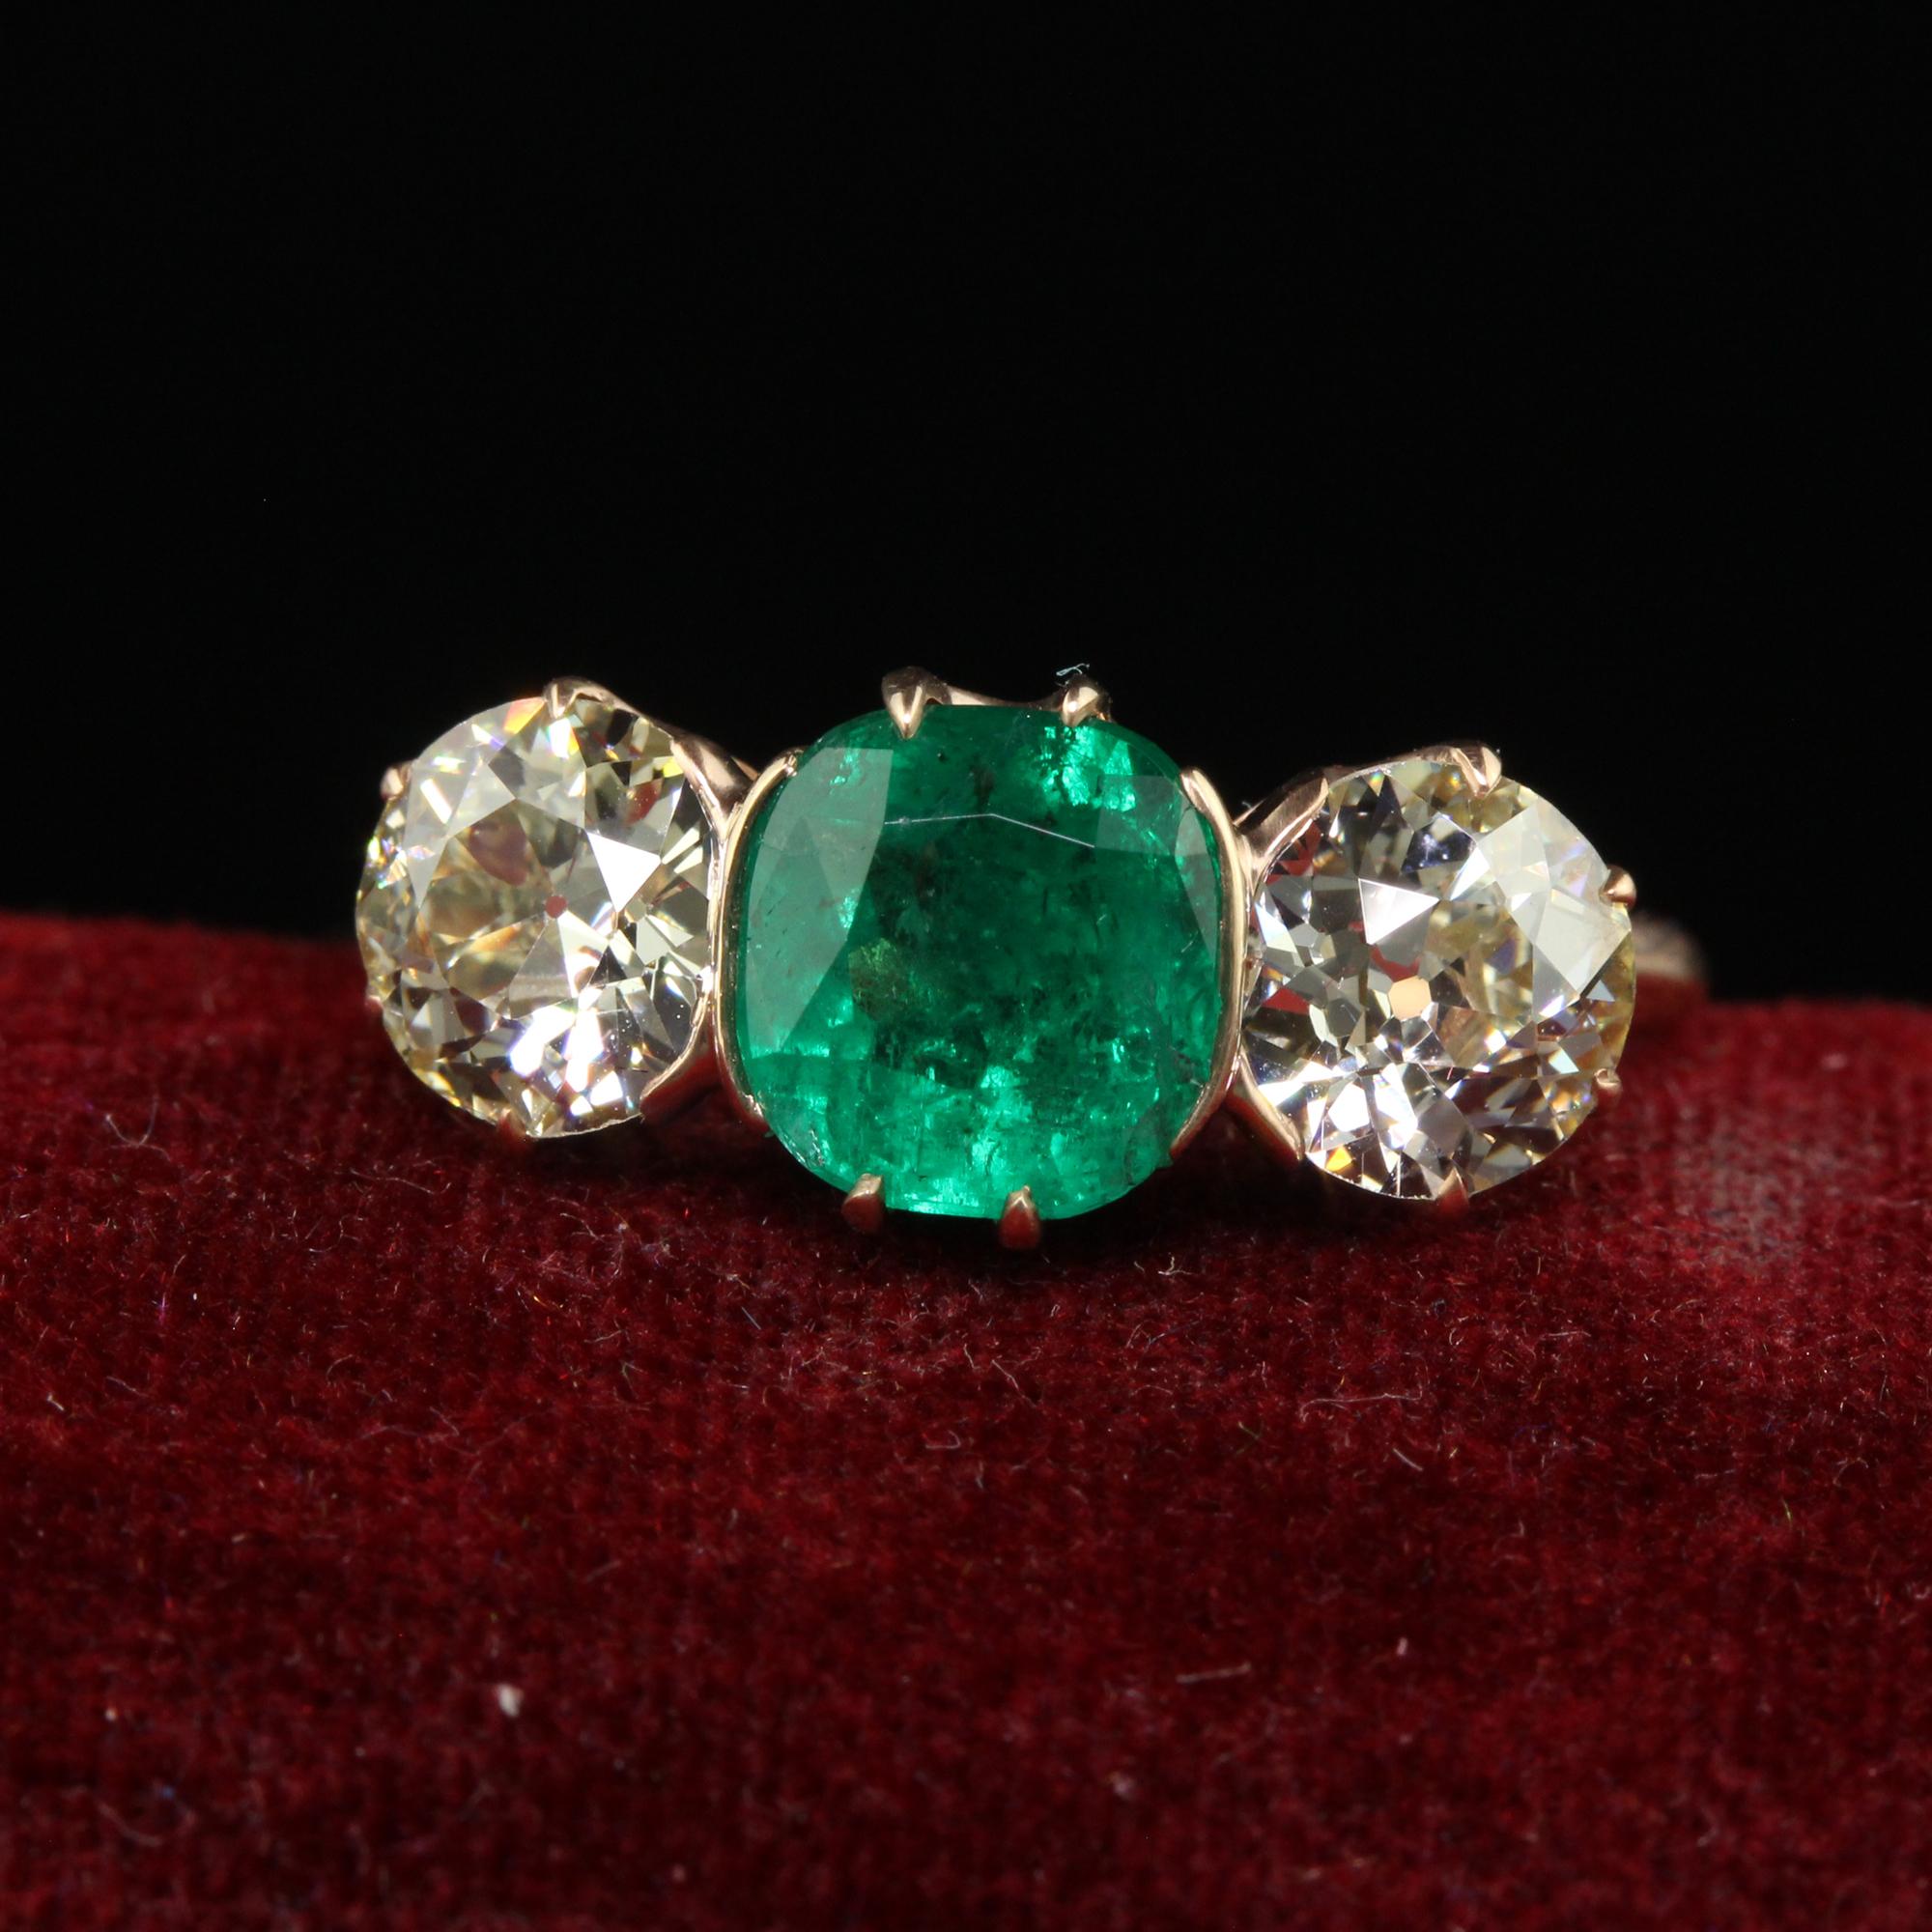 Schöne antike Art Deco 18K Rose Gold Old Euro Diamant und Smaragd Drei Stein Ring. Dieser wunderschöne Art-Deco-Ring mit drei Steinen ist aus 18 Karat Roségold gefertigt. Der Ring enthält einen schönen natürlichen grünen Smaragd in der Mitte und hat